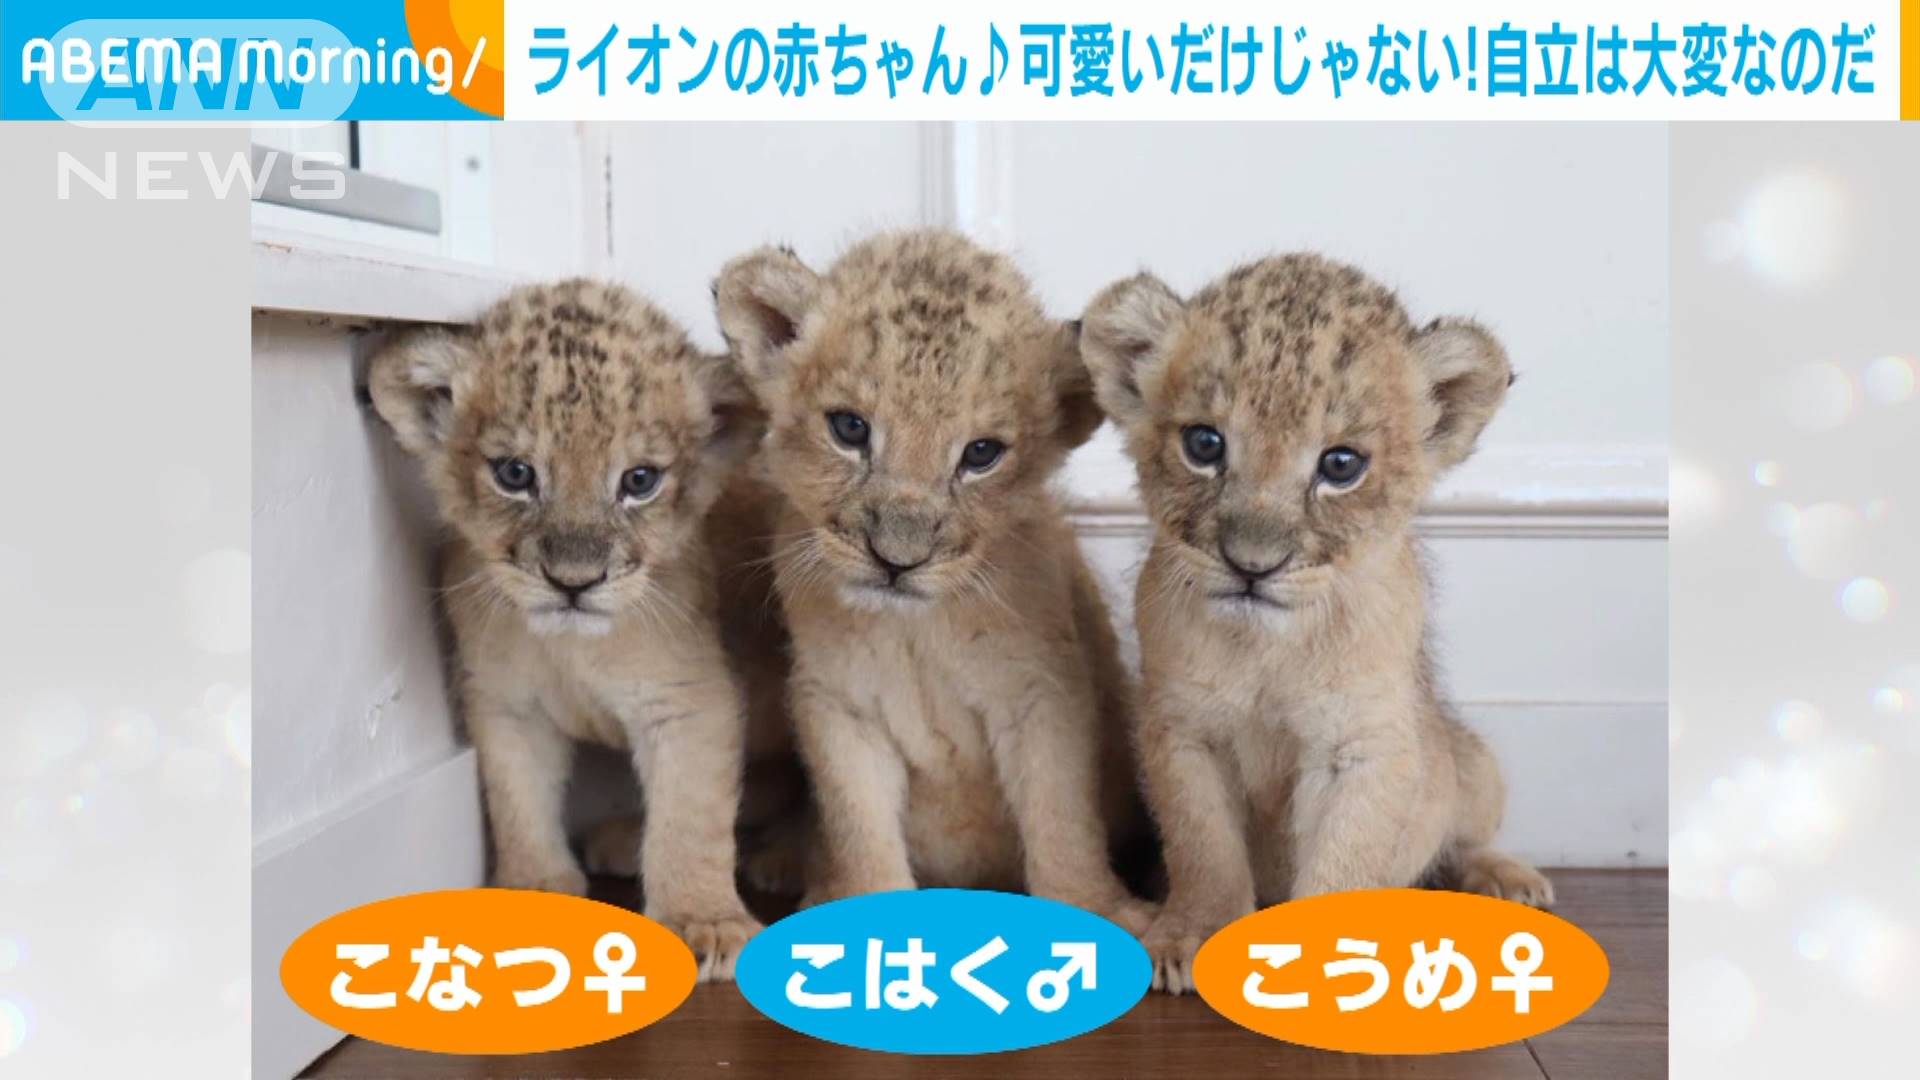 3つ子ライオン赤ちゃん 自立に 母の愛 は不要 テレ朝news テレビ朝日のニュースサイト